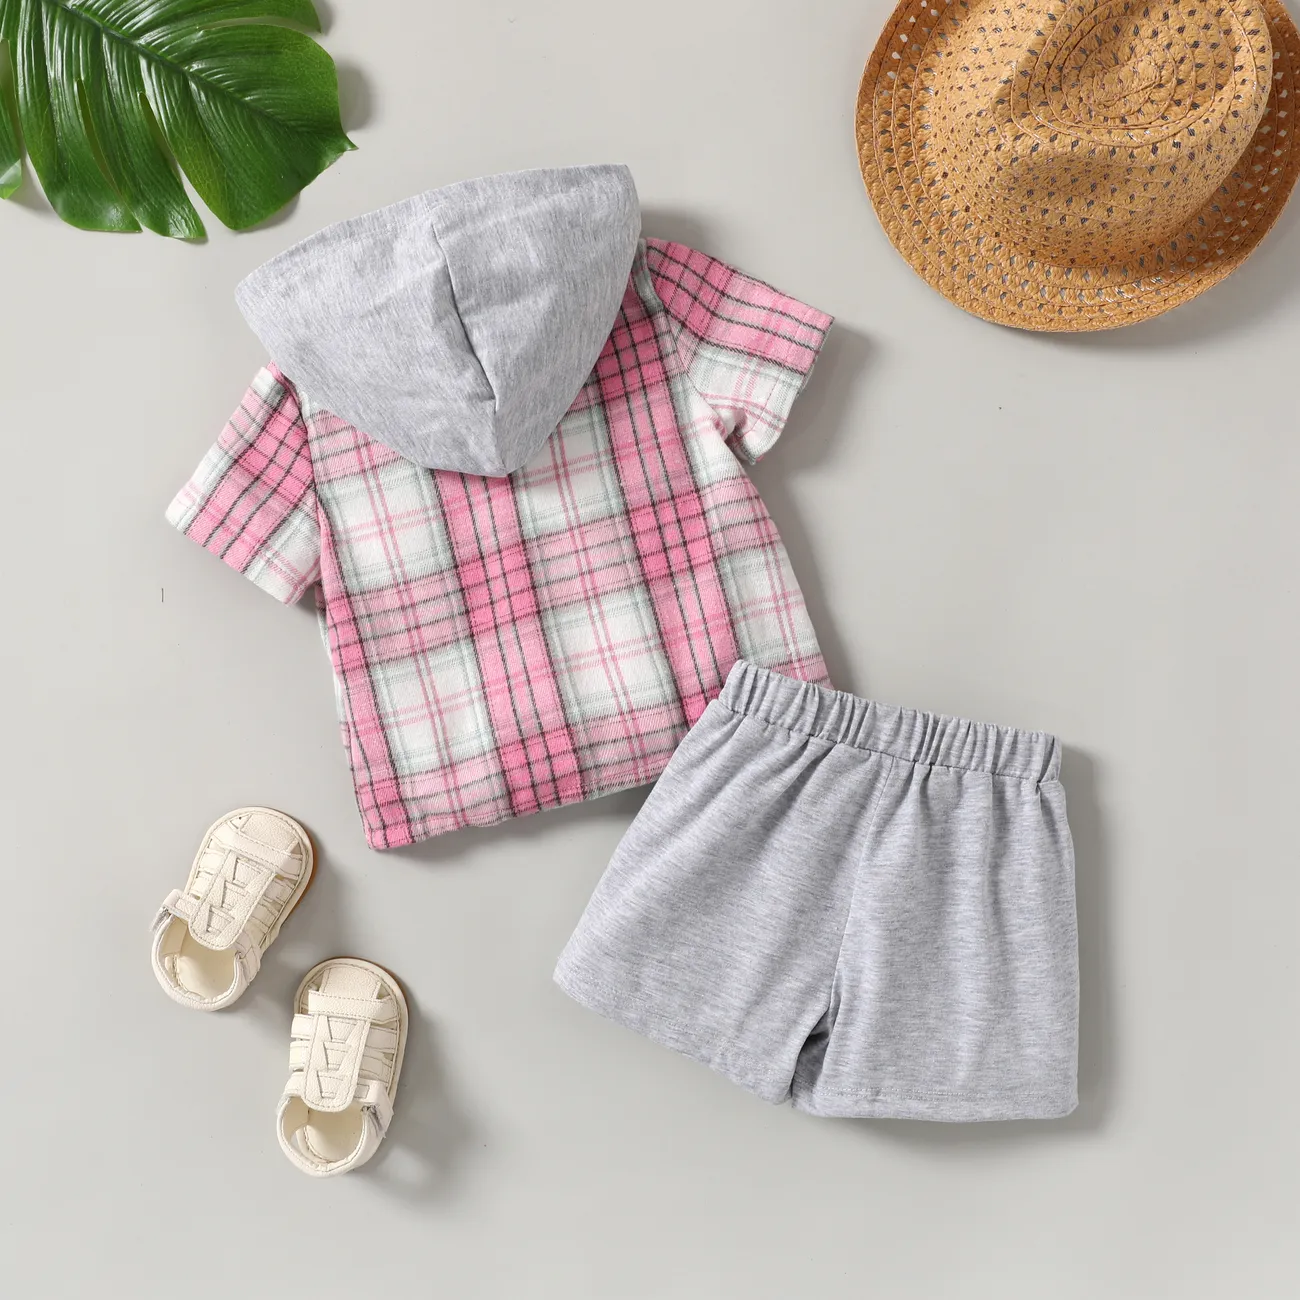 Bebê/Toddler Boy 2pcs xadrez estampa camisa com capuz e shorts Set Rosa big image 1